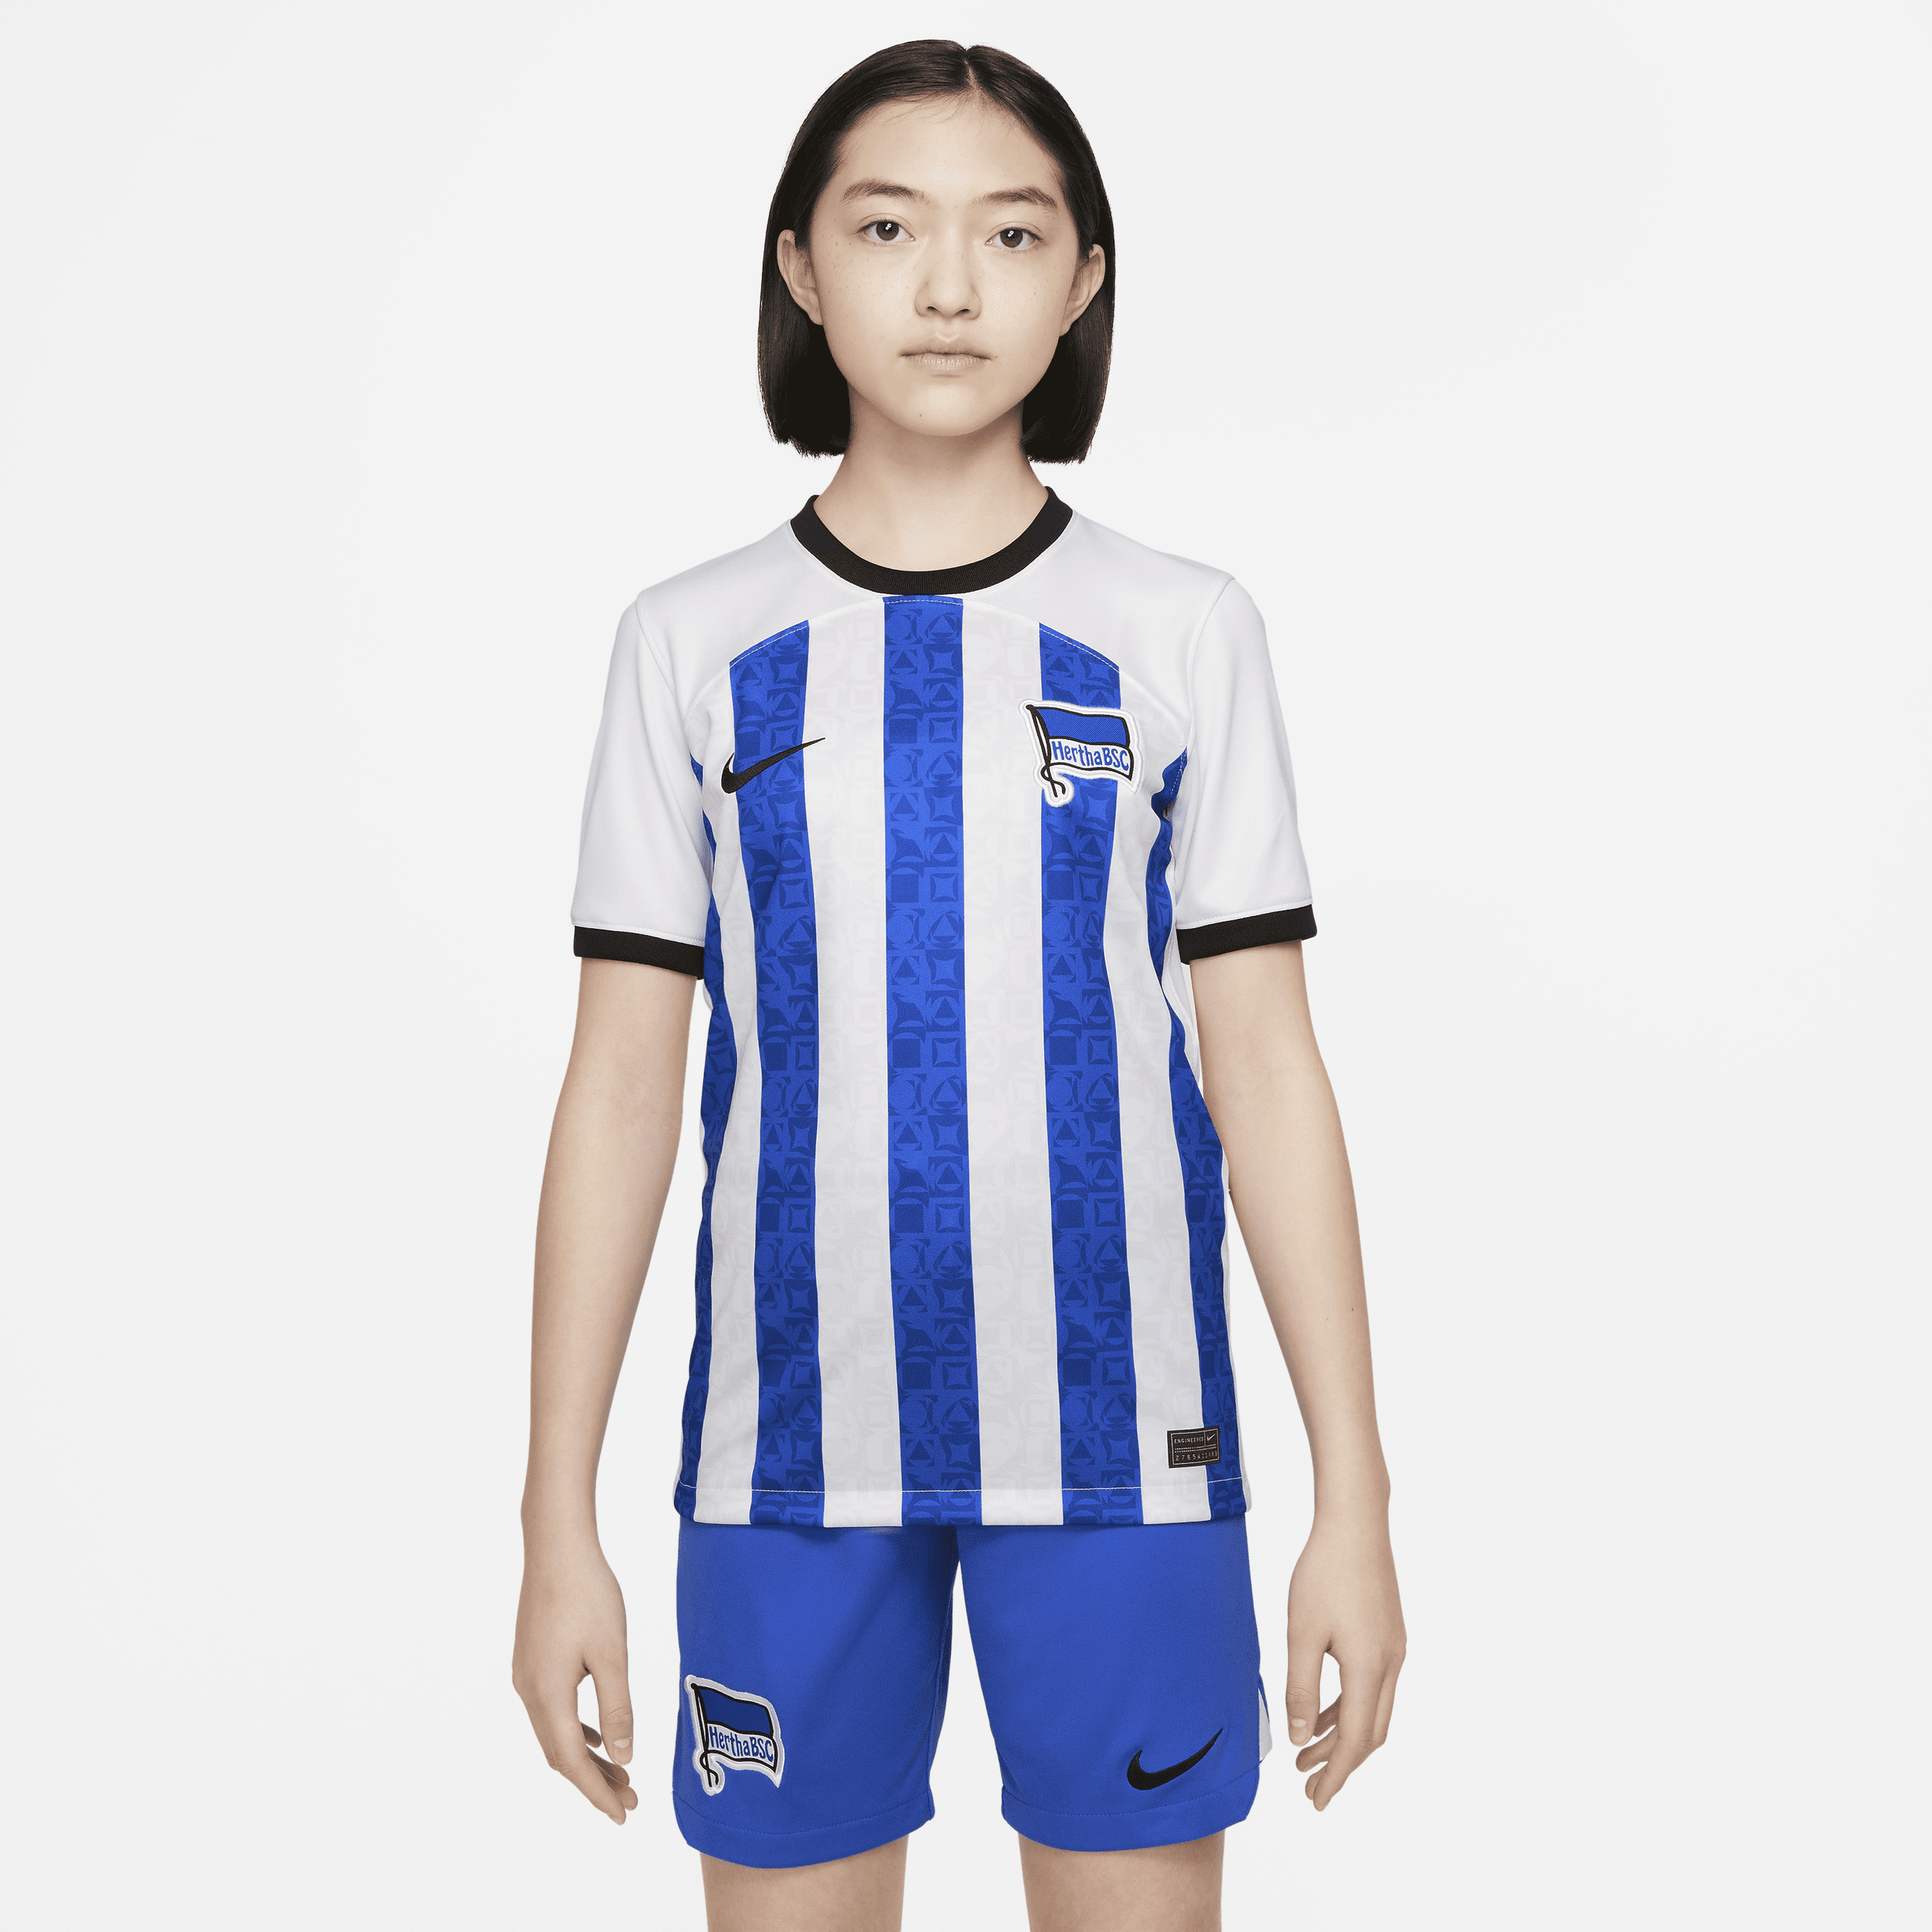 Hertha BSC 2022/23 Stadium Thuis Nike Dri-FIT voetbalshirt voor kids - Wit